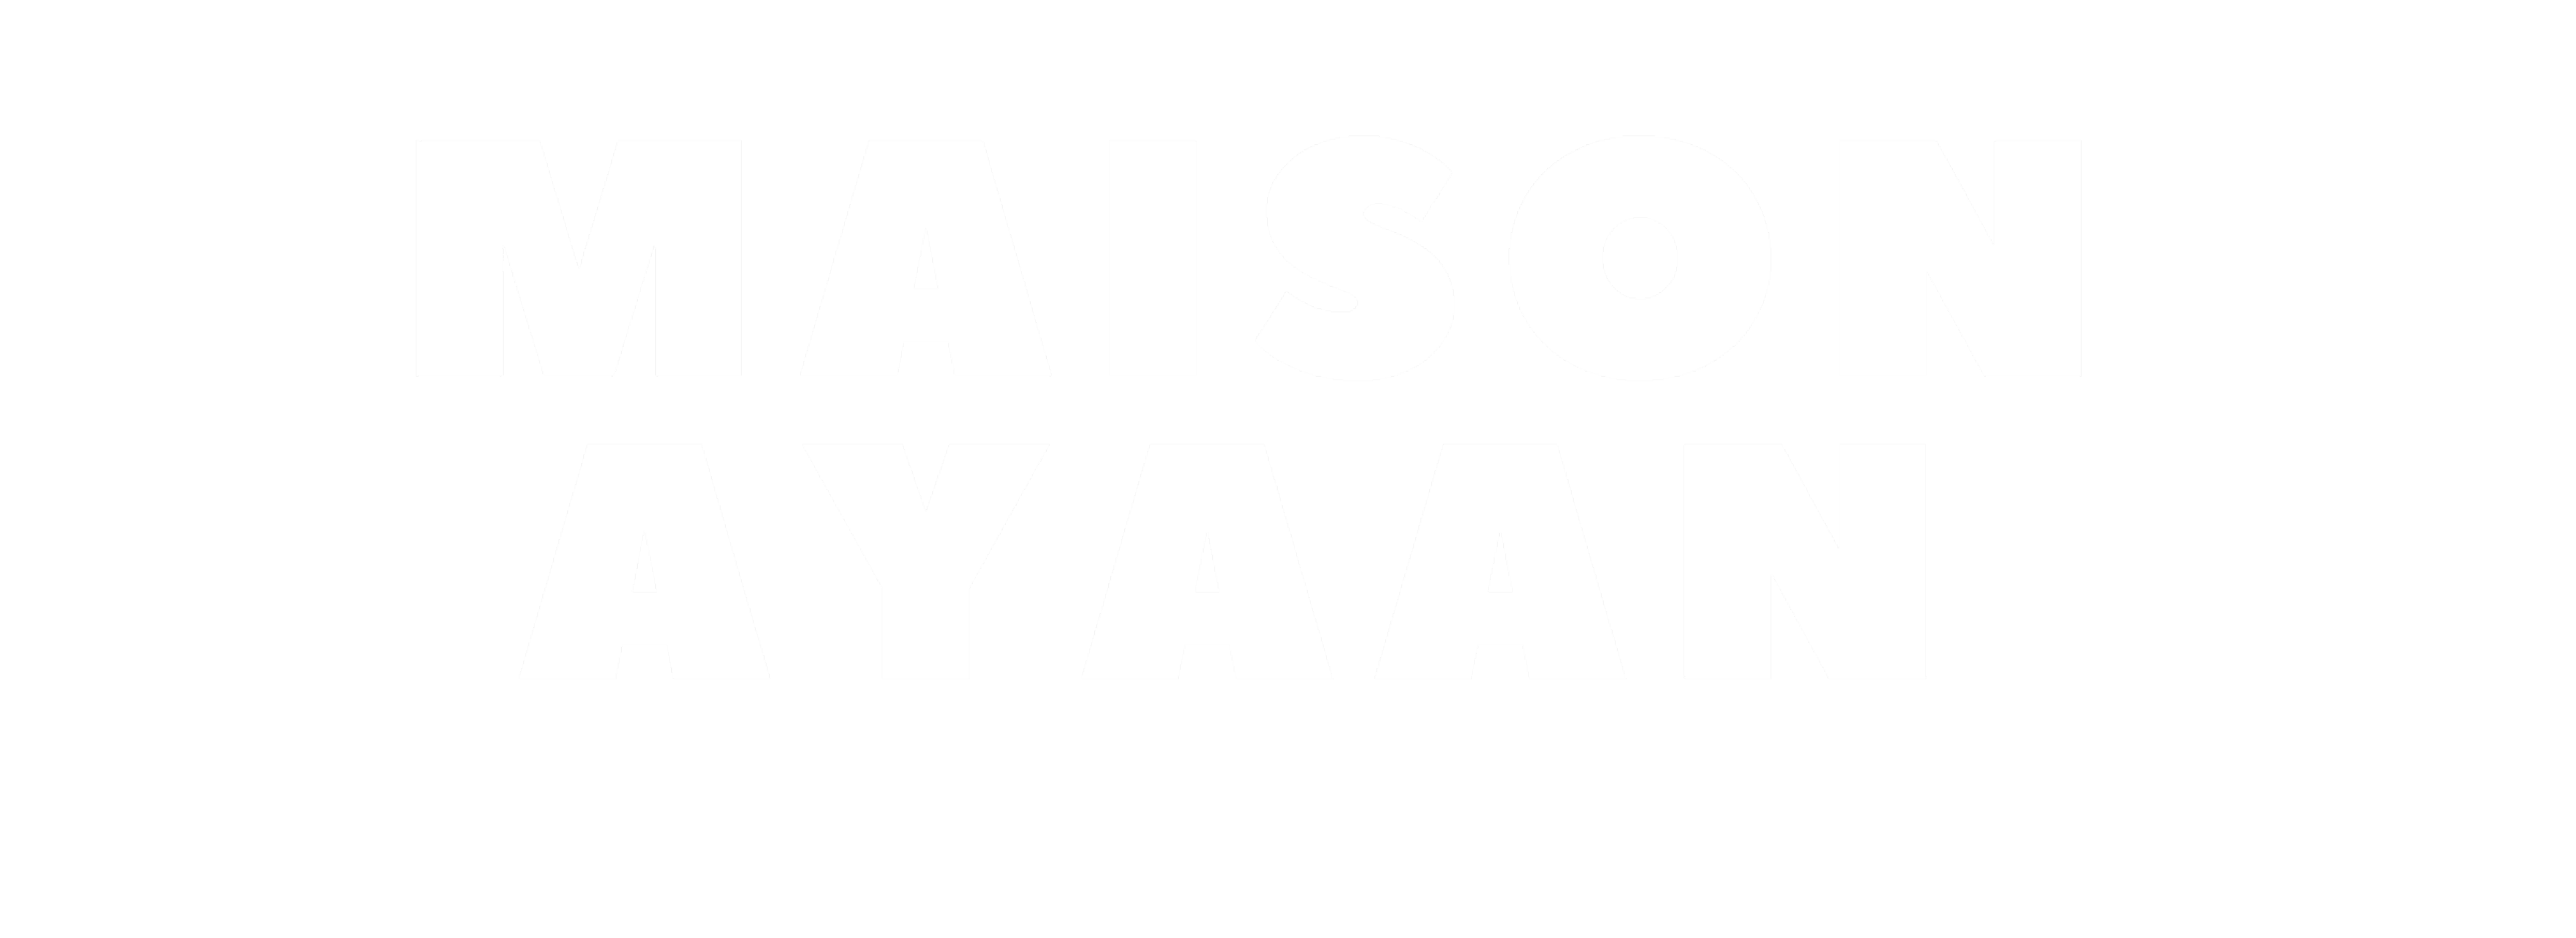 MAISON AYAAN